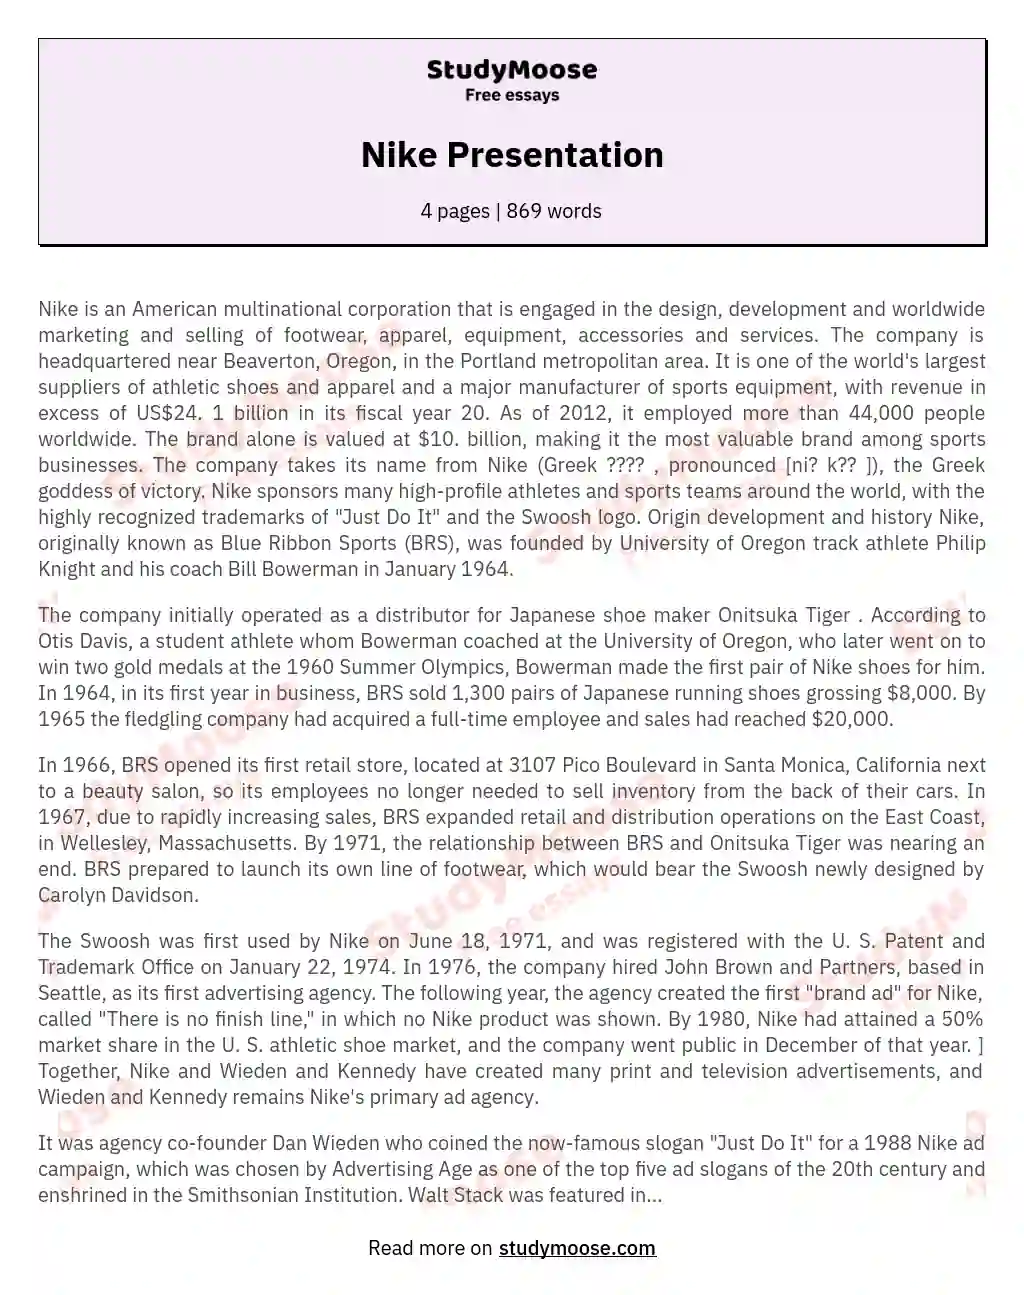 Nike Presentation essay